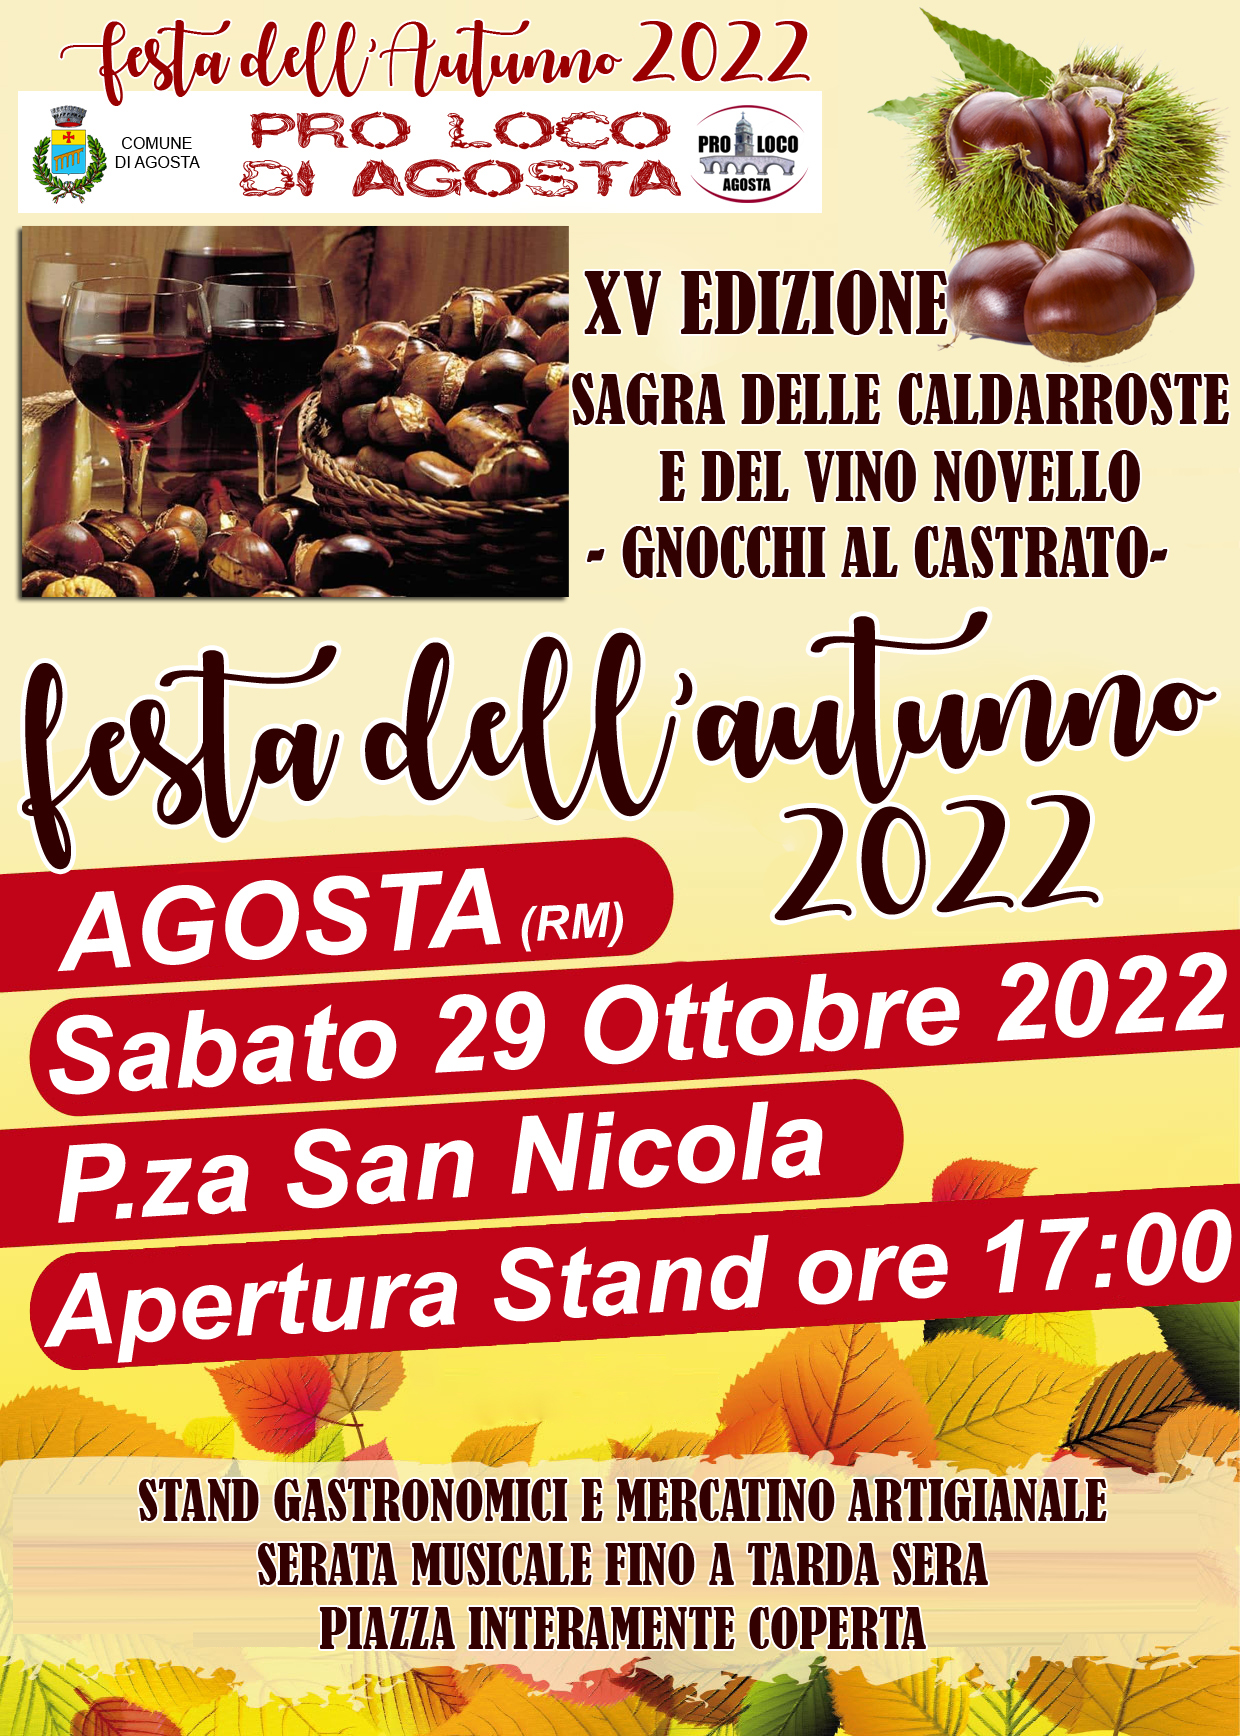 https://www.lacicala.org/immagini_news/20-10-2022/festa-dellautunno--sagra-delle-caldarroste-e-vino-novello--gnocchi-al-castrato--29-ottobre-2022-ad-agosta-.jpg